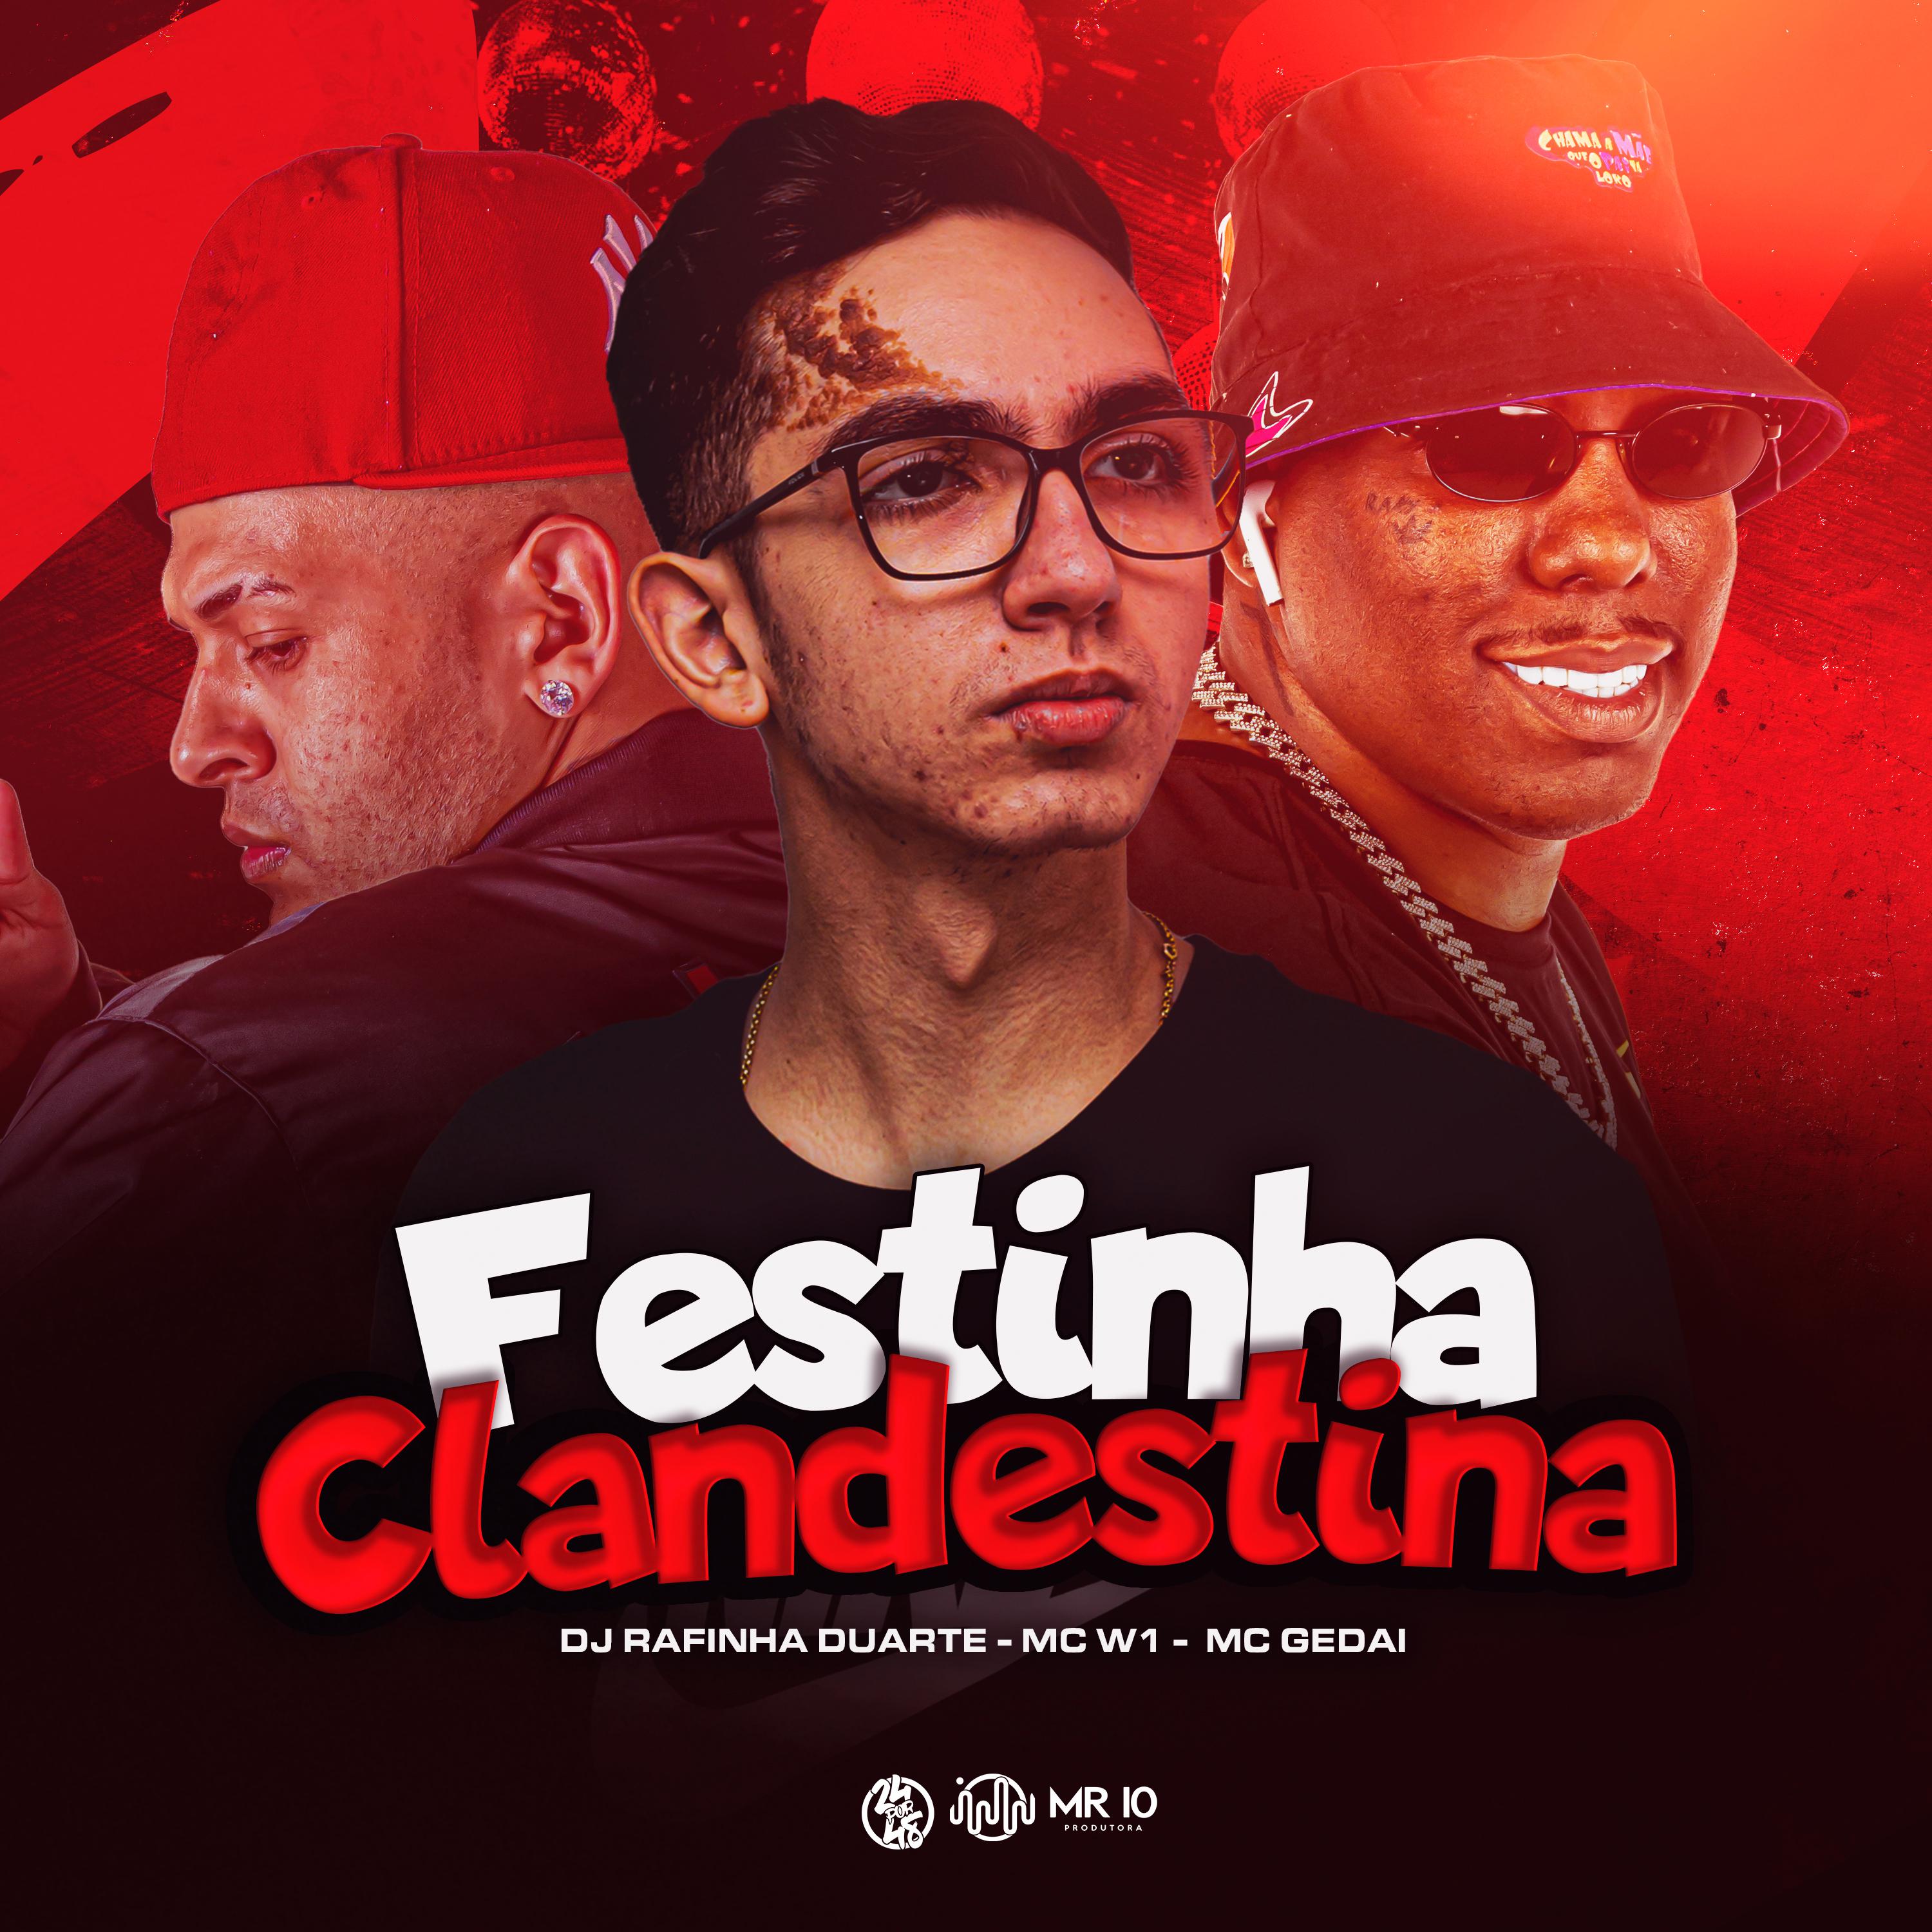 DJ Rafinha Duarte - Festinha Clandestina